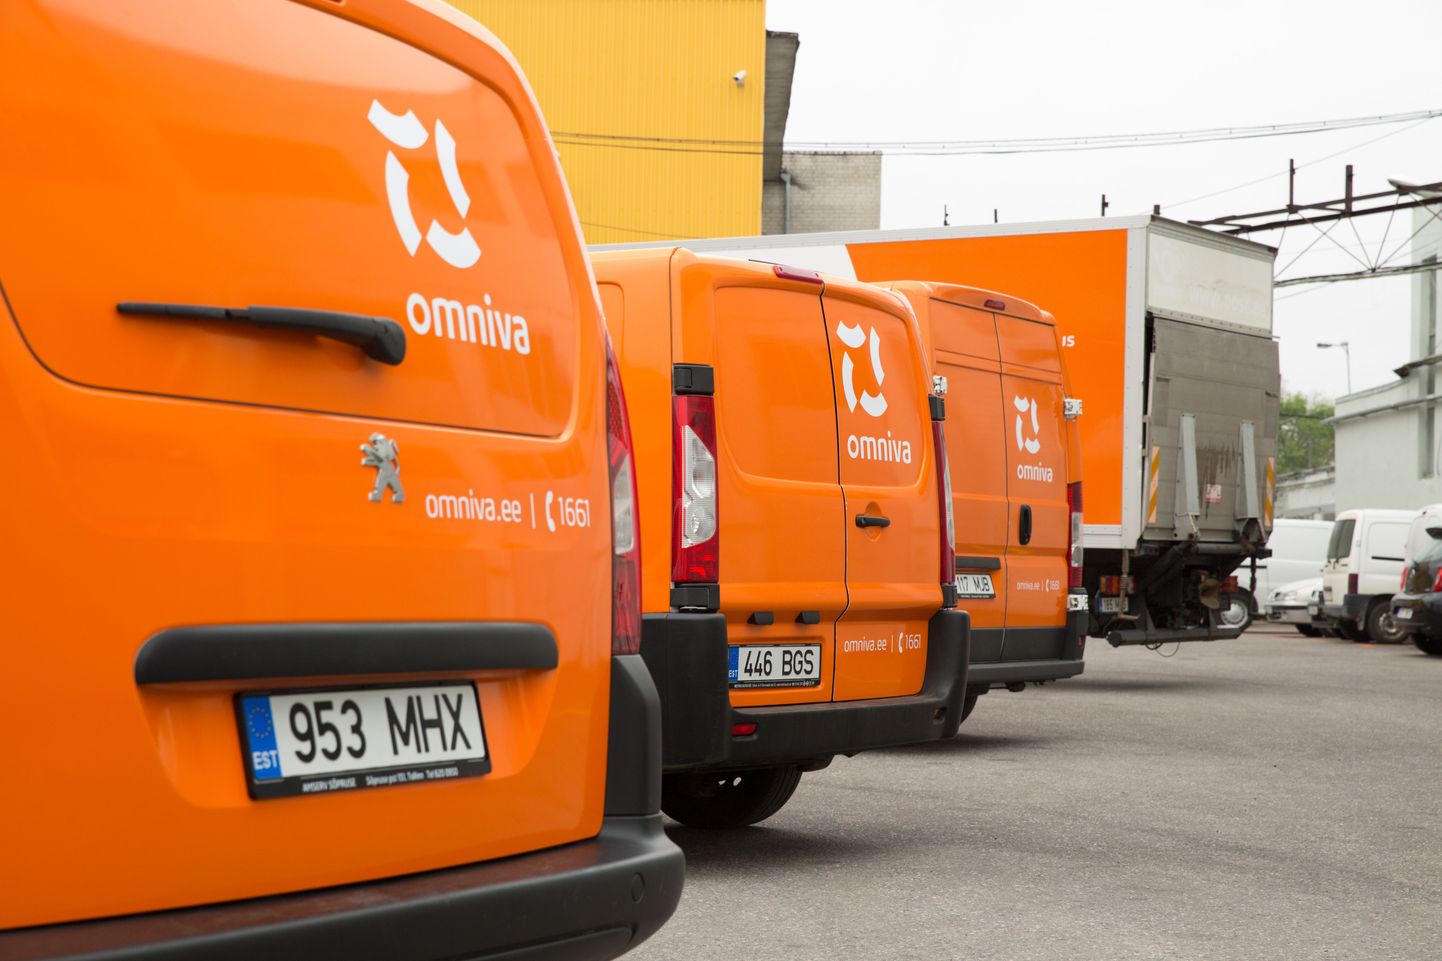 Eesti Post võttis tänasest kasutusele uue rahvusvahelise nime Omniva.